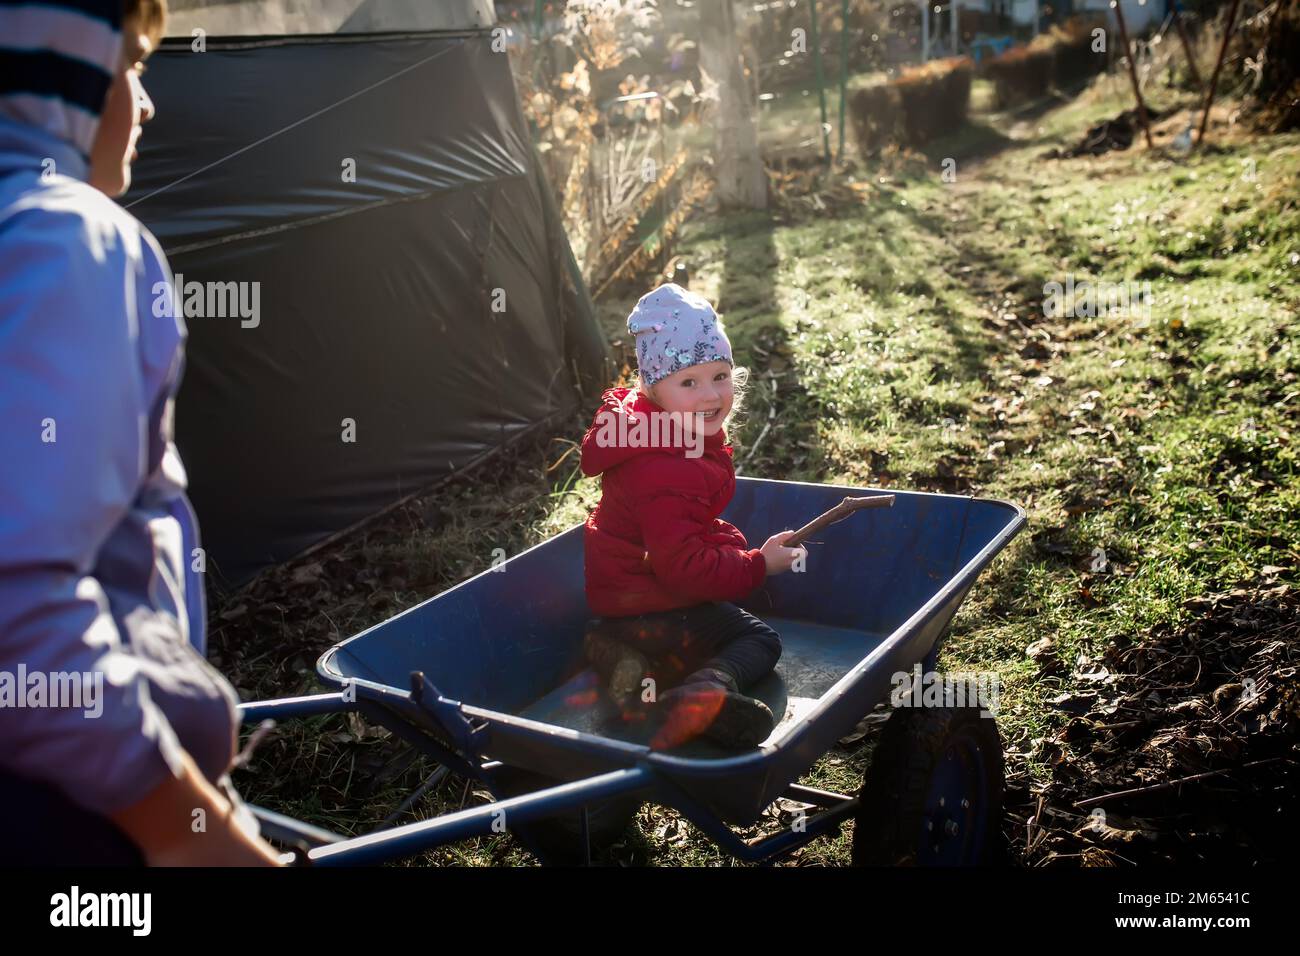 Une petite fille dans un chariot de jardin bleu. Frère et sœur s'amusent tout en préparant le jardin Banque D'Images